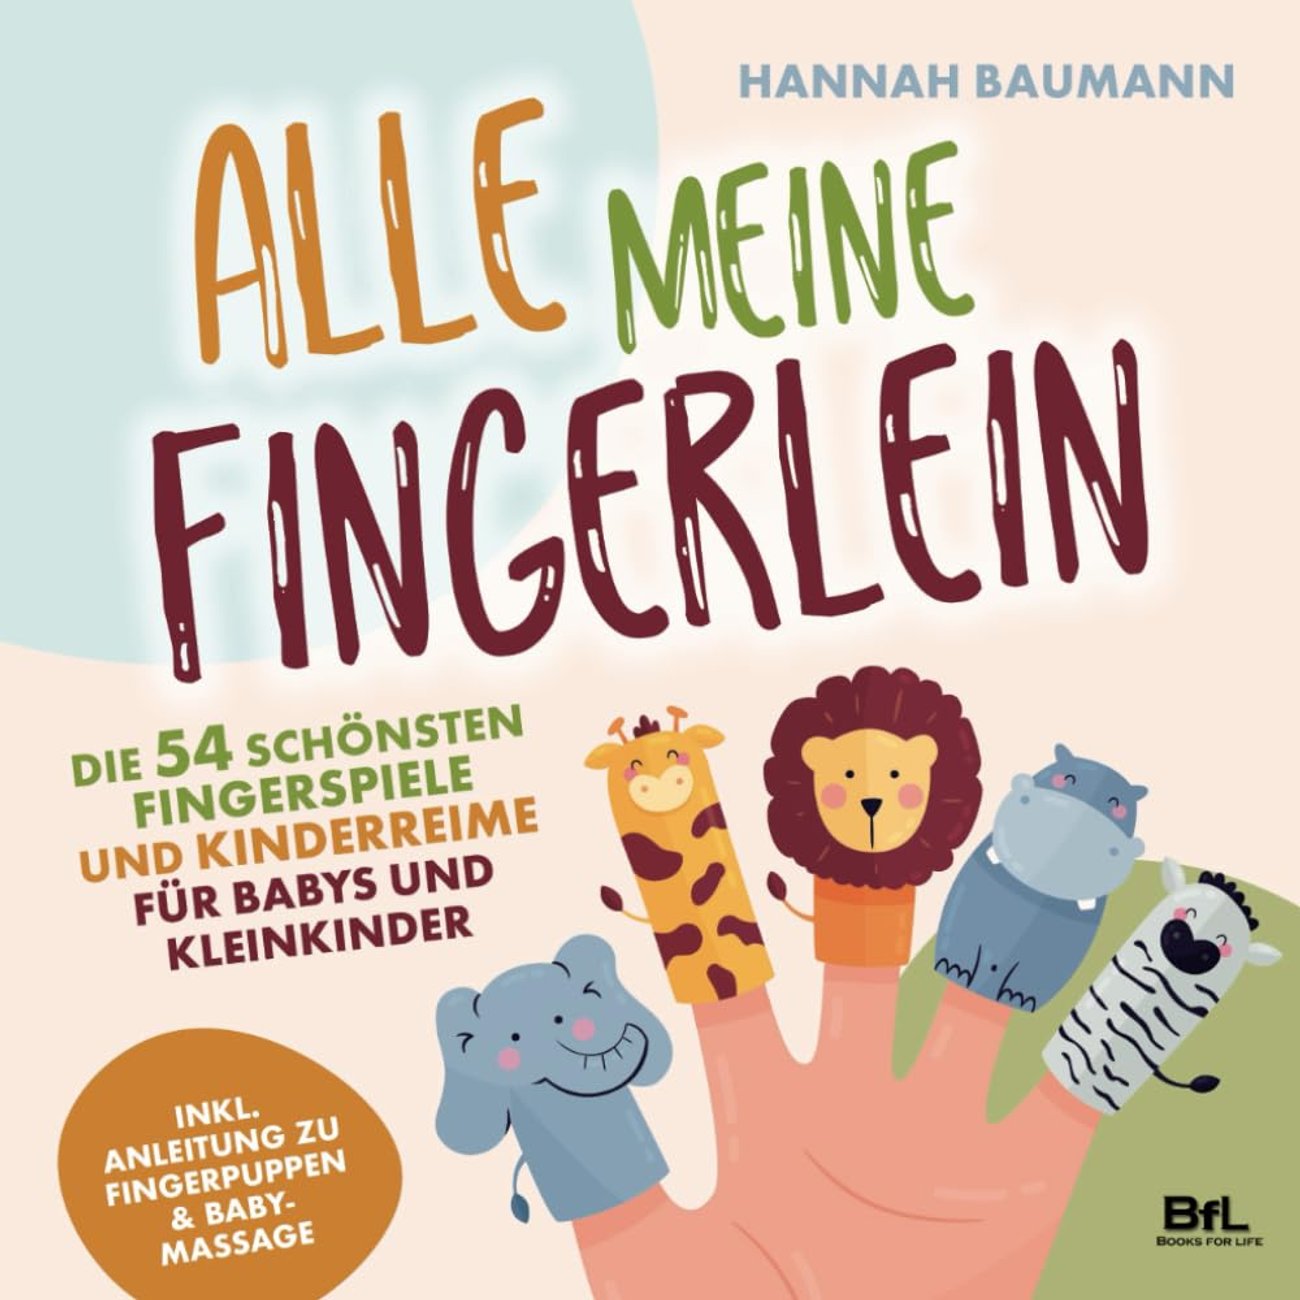 Die 54 schönsten Fingerspiele und Kinderreime für Babys und Kleinkinder - ALLE MEINE FINGERLEIN